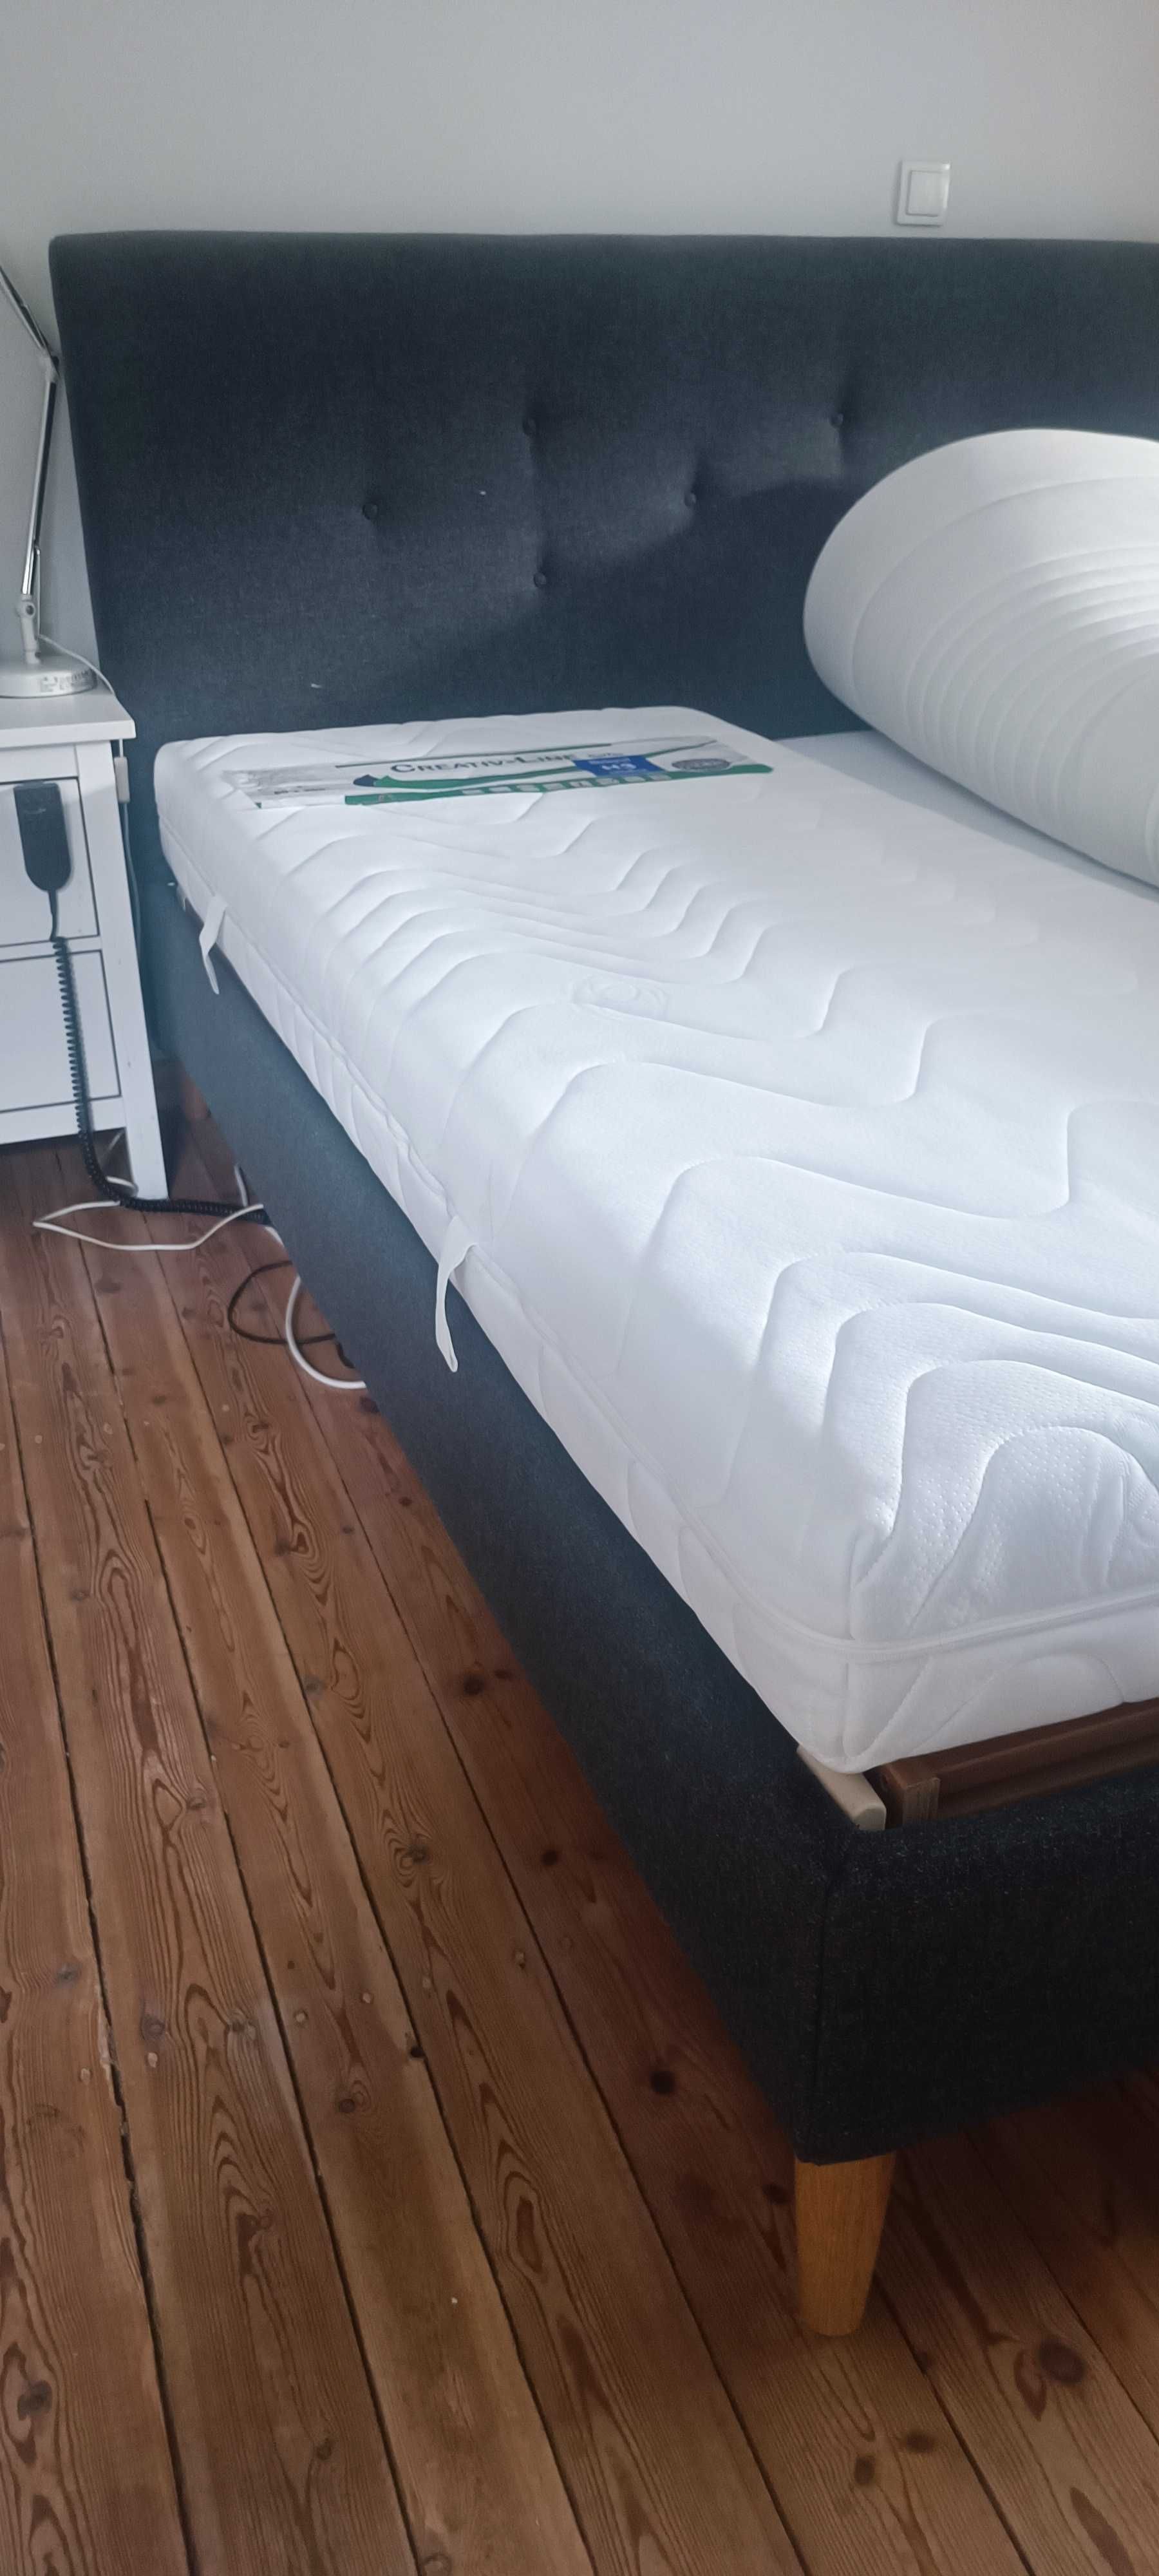 Stelaż rehabilitacyjny elektryczny i materac do łóżka